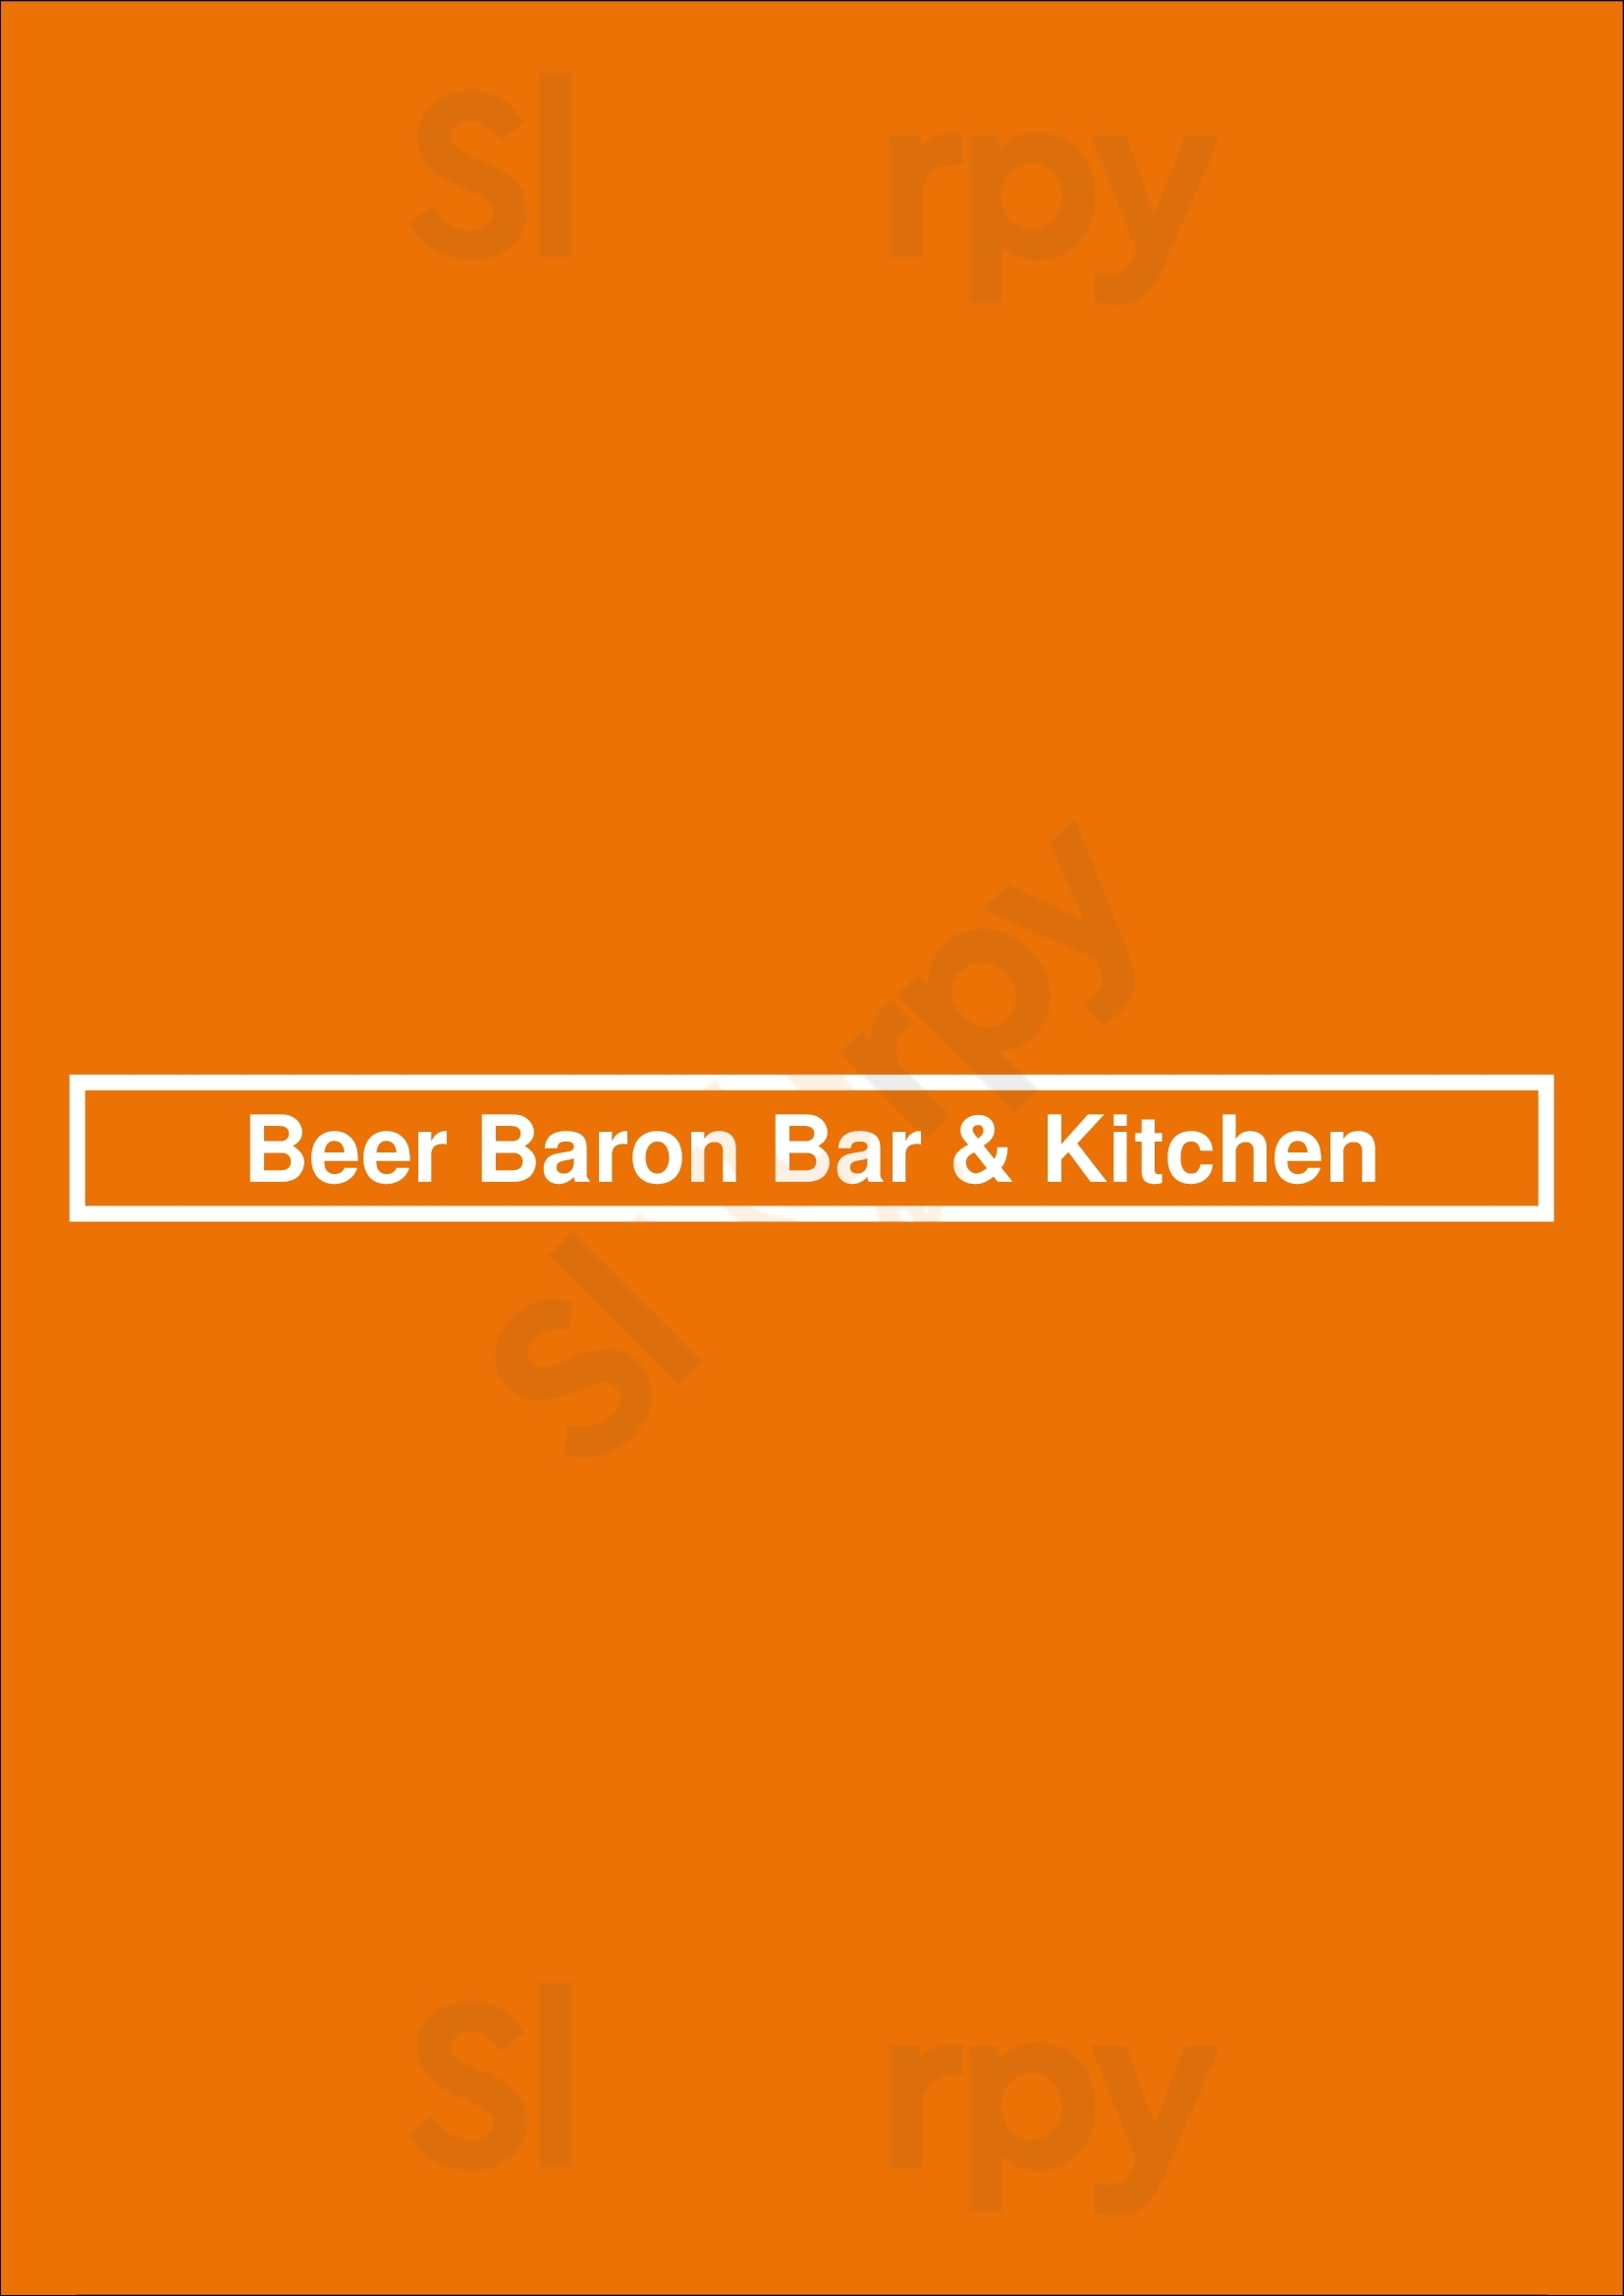 Beer Baron Bar & Kitchen Oakland Menu - 1